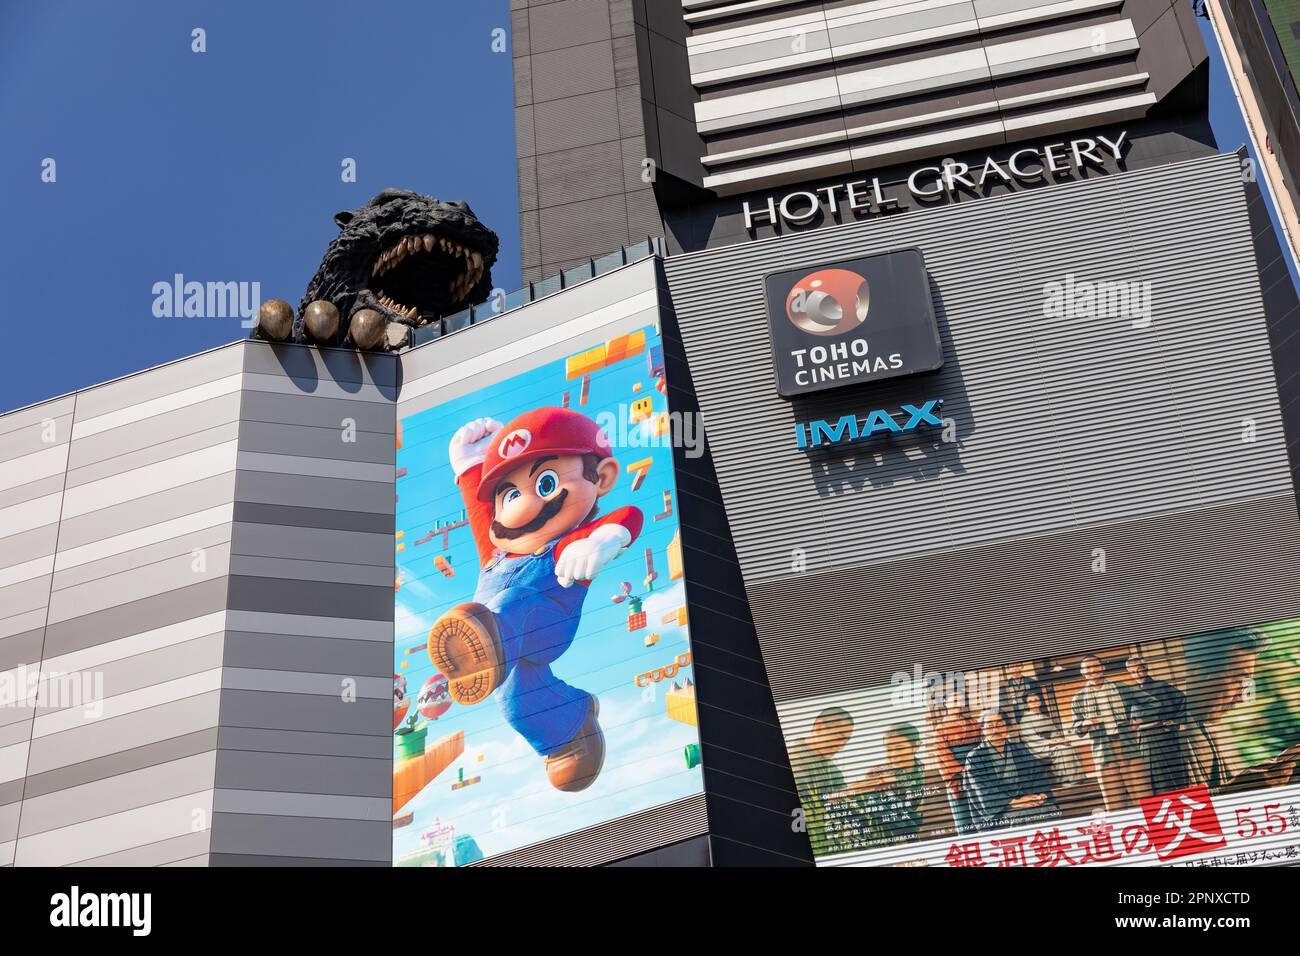 Hotel Gracery Godzilla Aprile 2023, Tokyo toho cinema e super Mario cartellone pubblicitario, Shinjuku città, Giappone, Asia Foto Stock